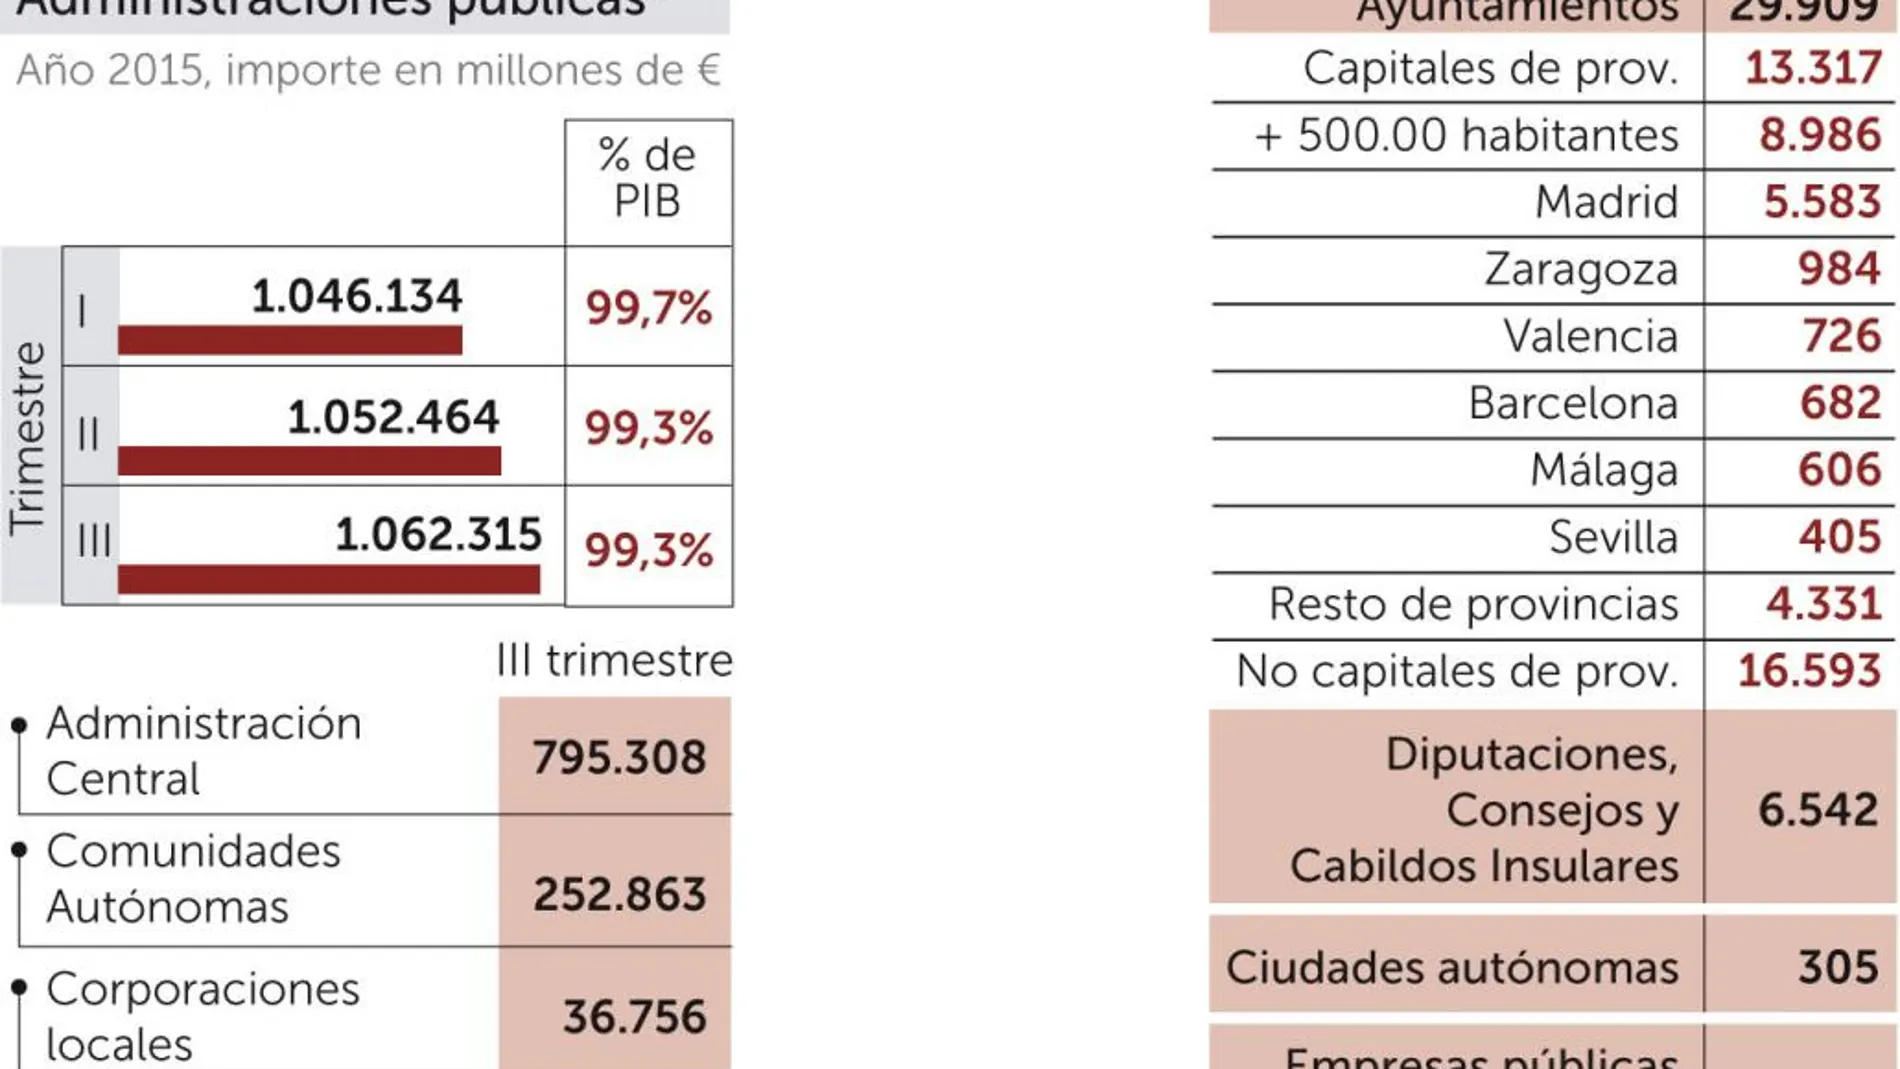 La deuda de Cataluña supera a la de Madrid y Andalucía juntas